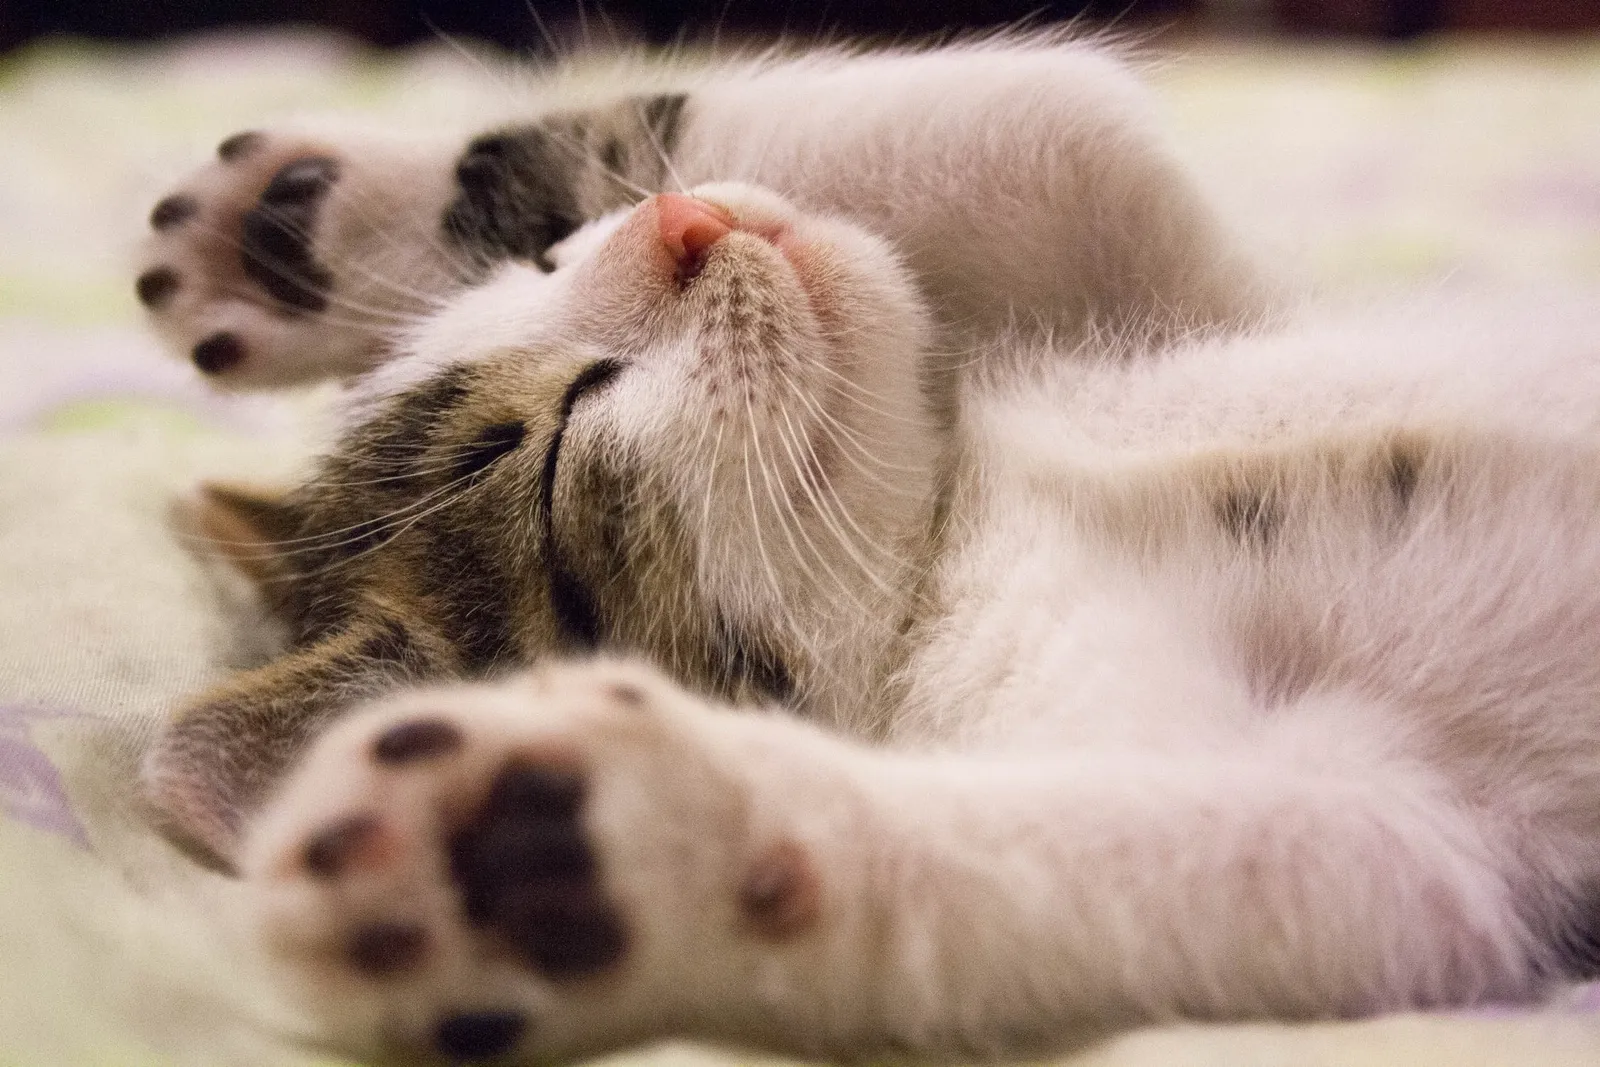 Kucingmu Mager dan Tidur Terus? Begini Penjelasan Ilmiahnya